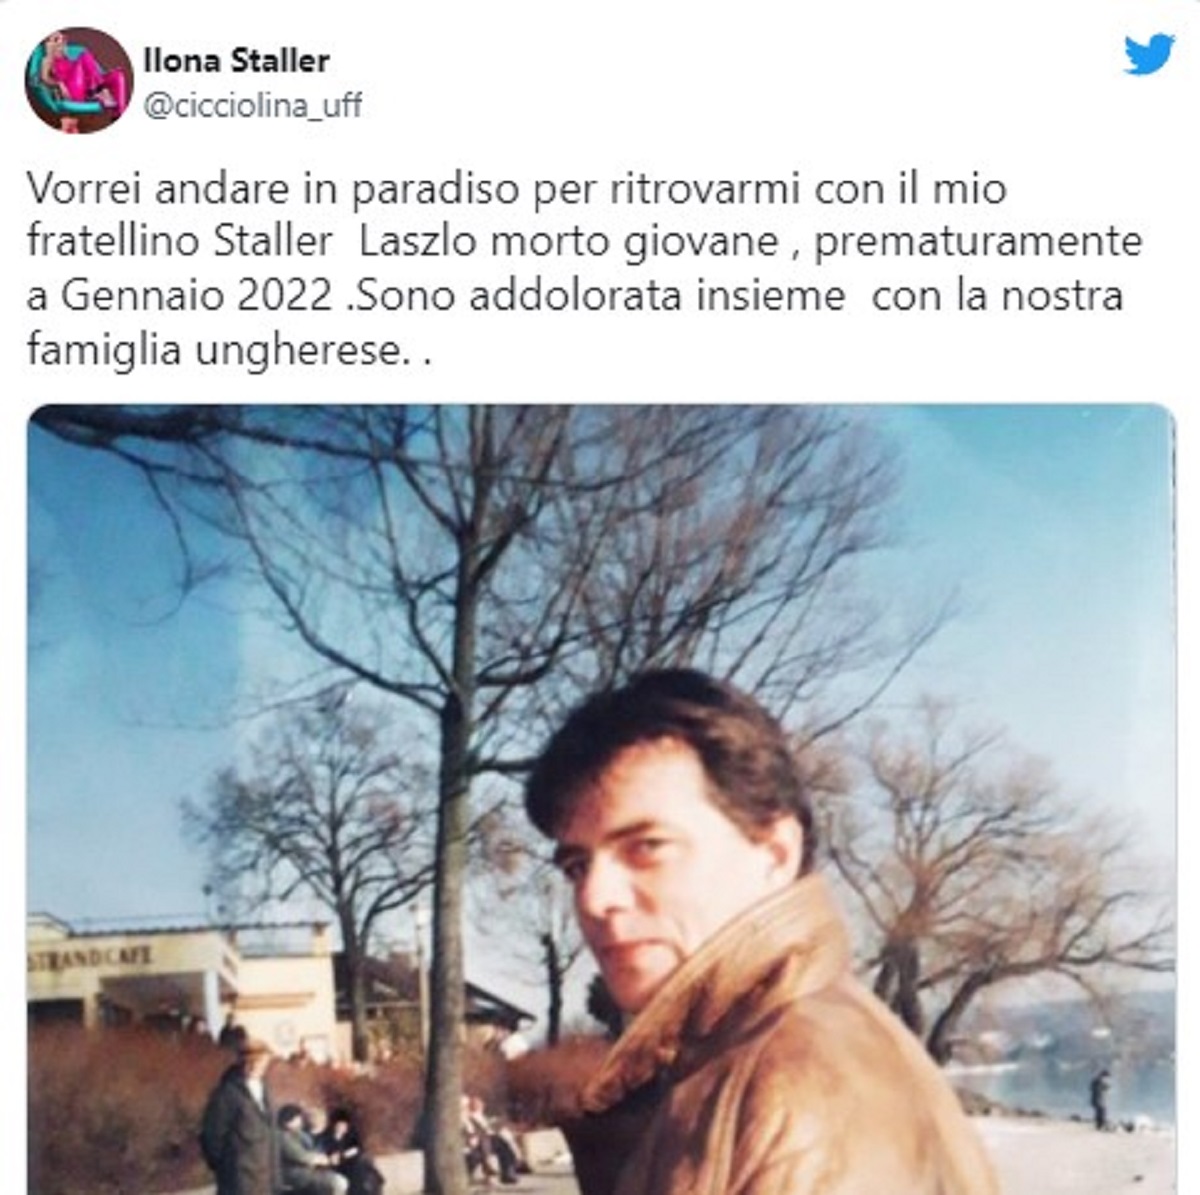 Ilona Staller morto fratello Laszlao annuncio